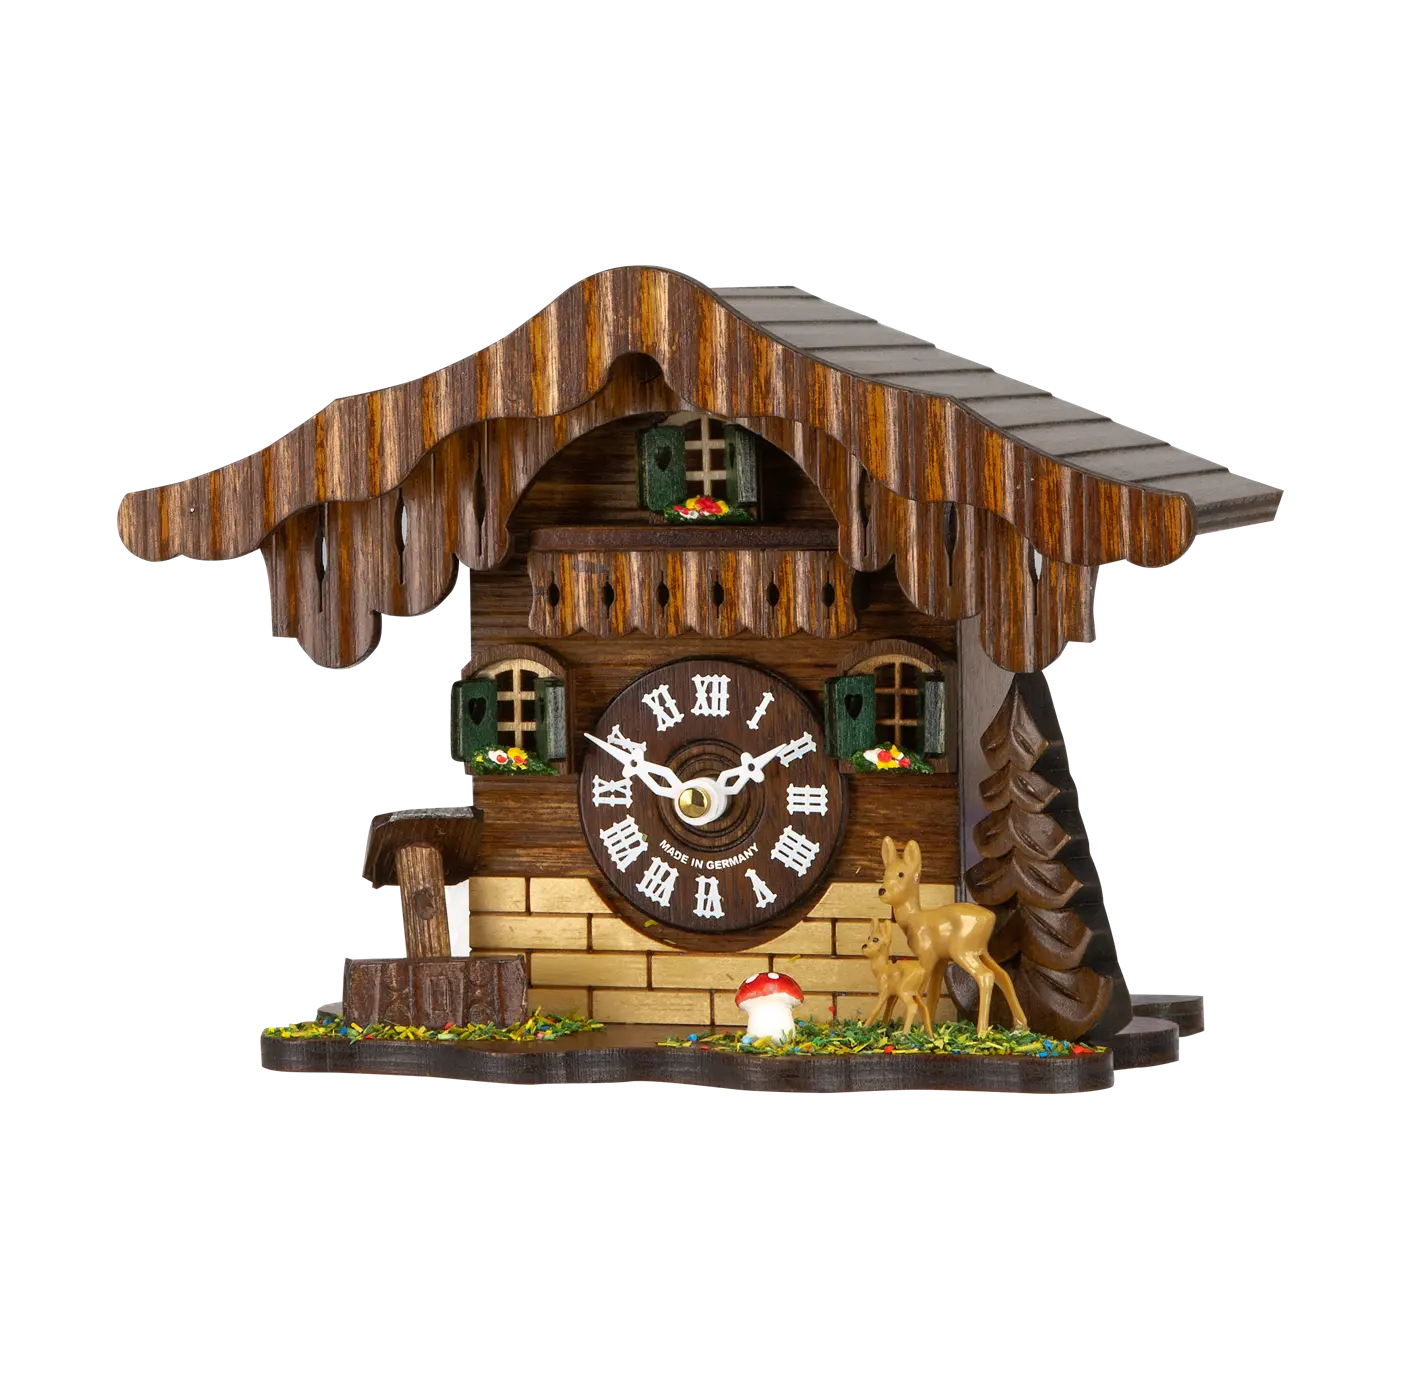 ساعة حائط كوارتز خشبية صغيرة تقليدية أو ساعة تذكارية للطاولة بجرس اليهوك أو بجرس وستمنستر بجودة عالية مصنوعة في ألمانيا